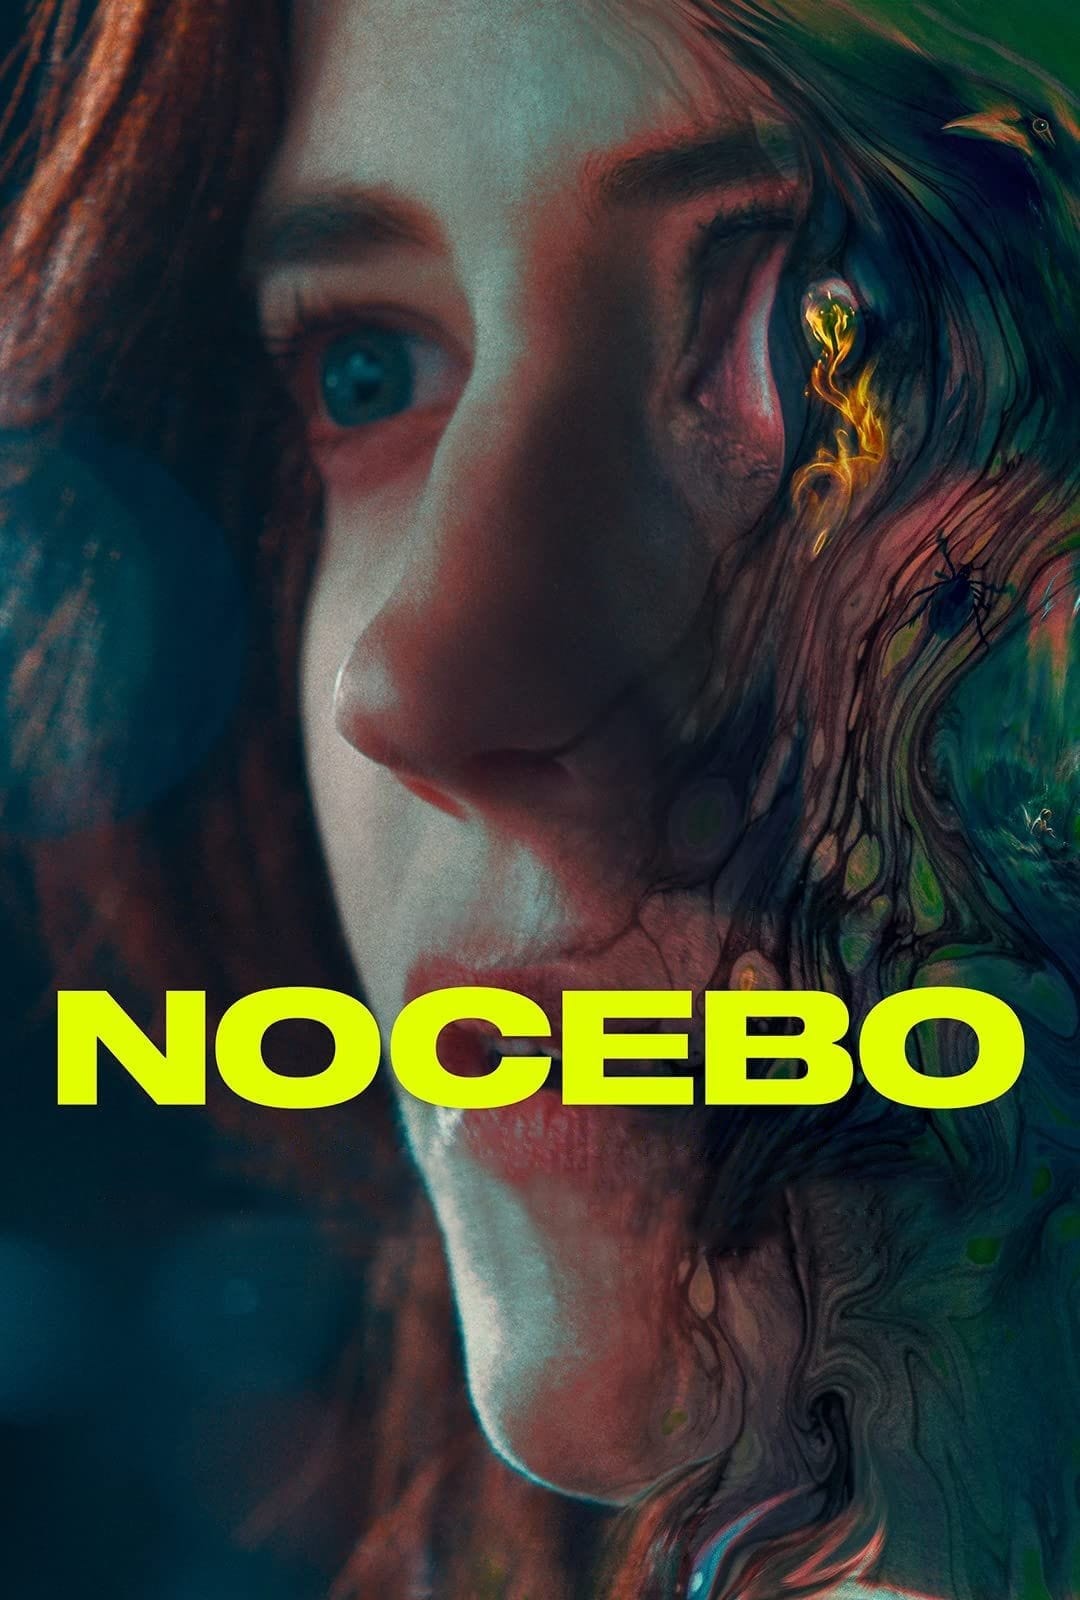 Nocebo [Sub-ITA] (2022)